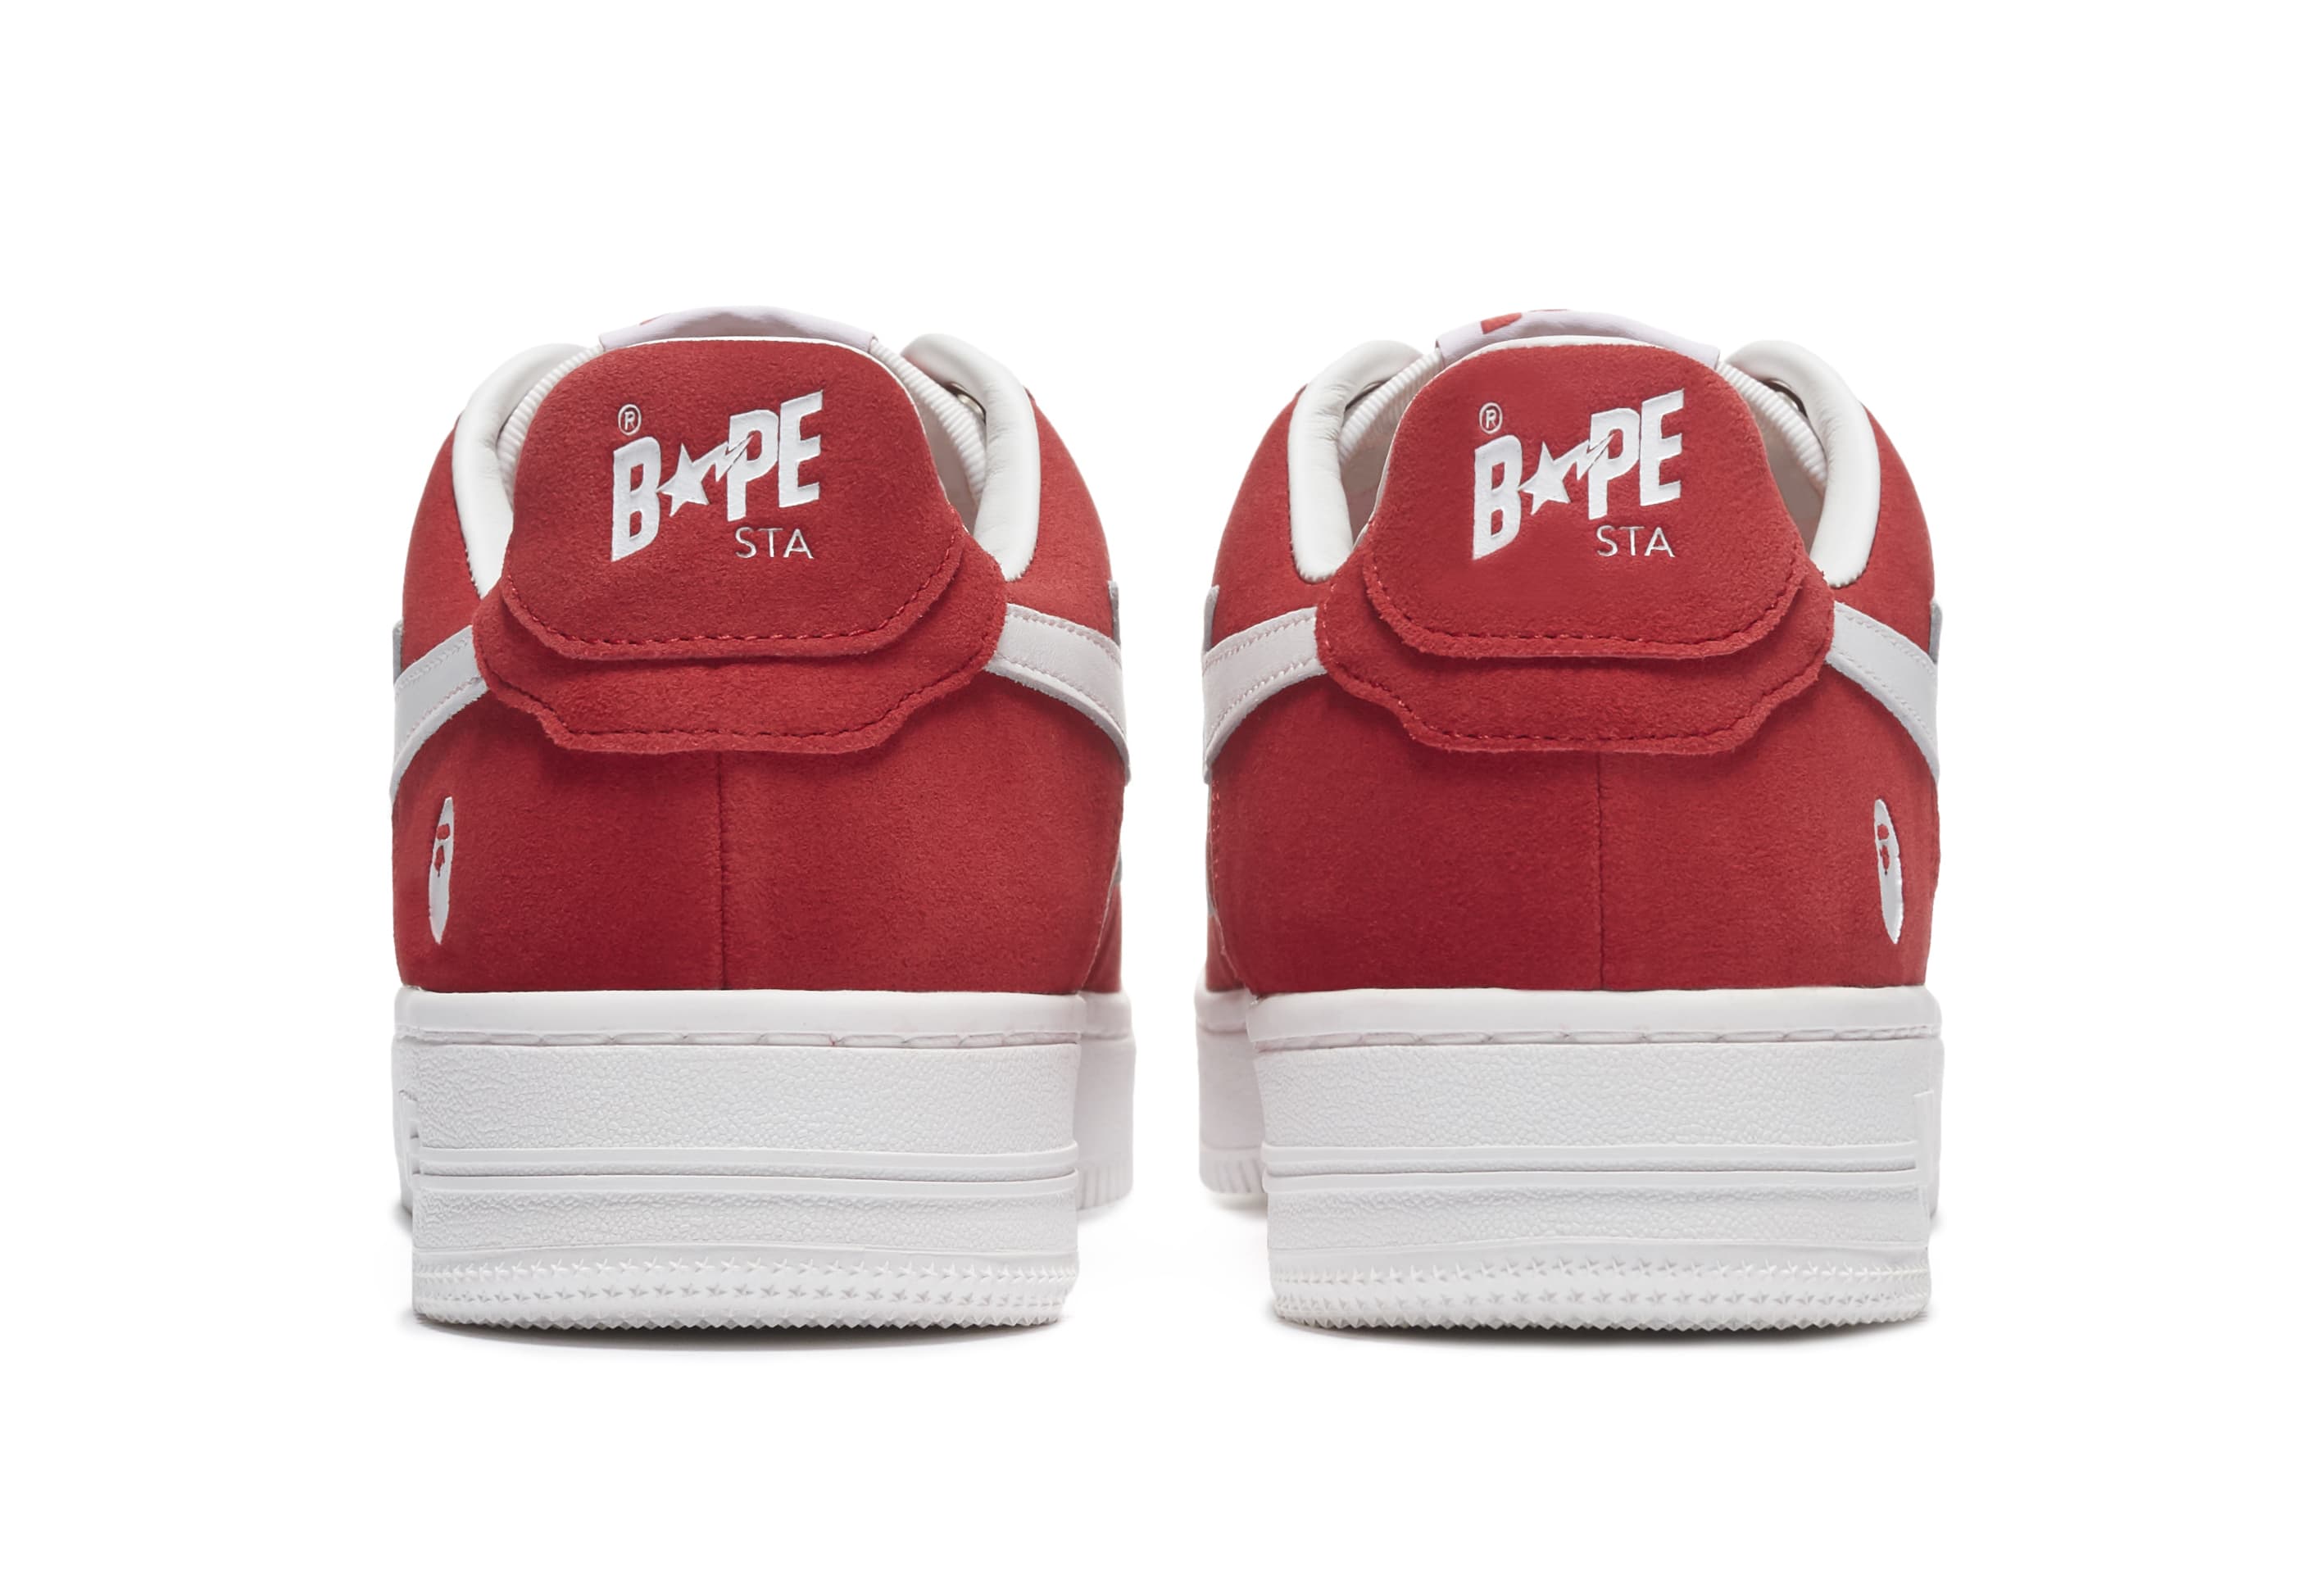 Bape Sta Suede &#x27;Red&#x27; Heel